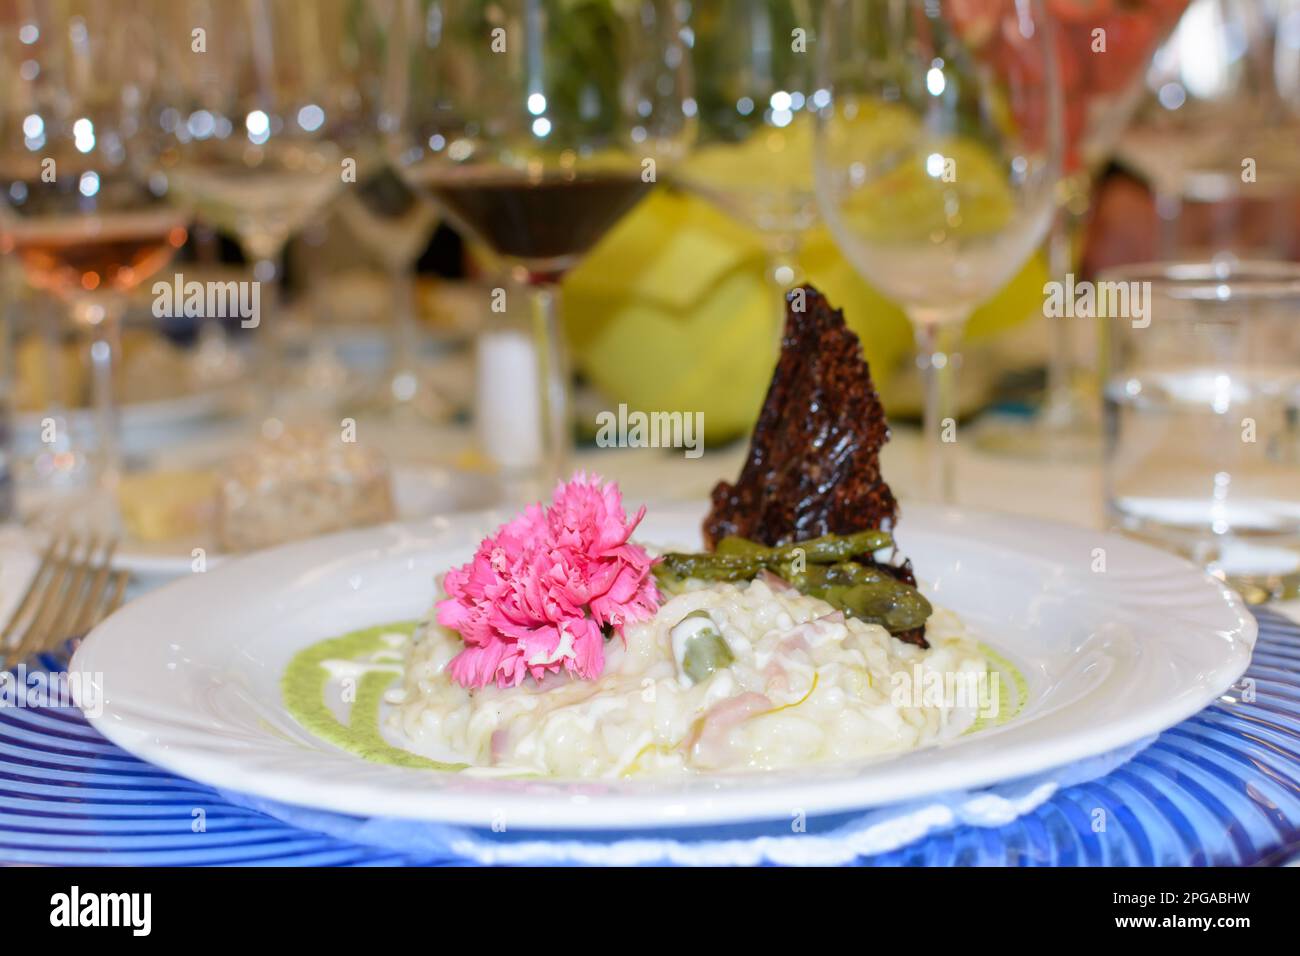 Plato de risotto caliente con crema de espinacas, típico del norte de Italia, servido de una manera elegante Foto de stock